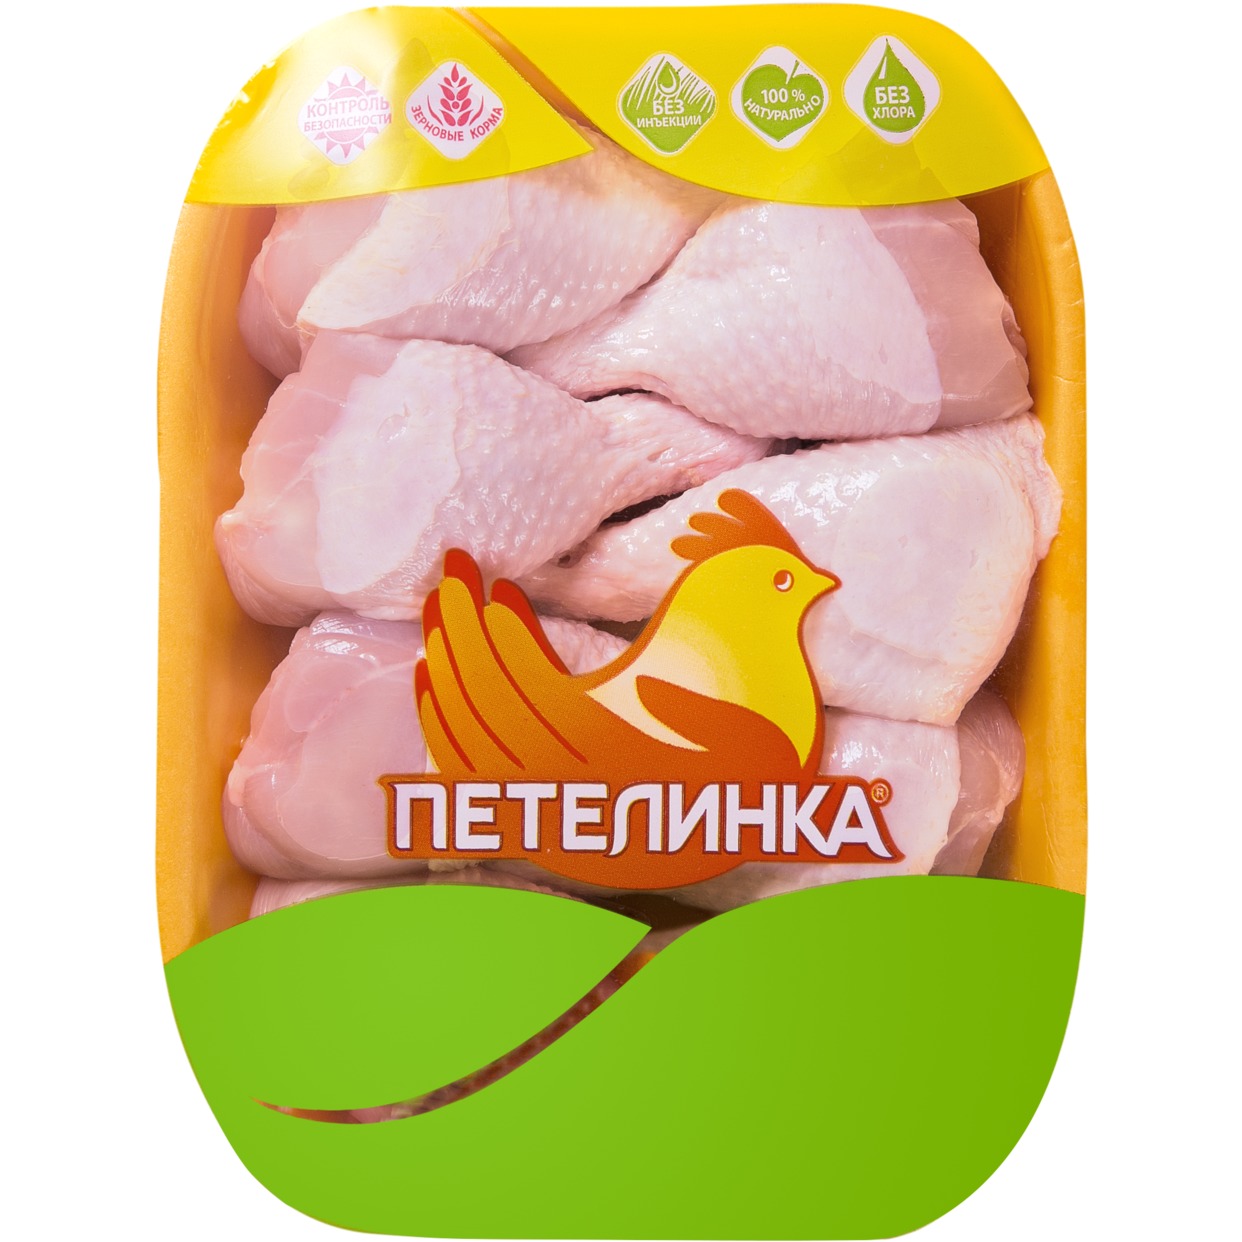 Голень цыпленка, охлажденная, Петелинка, 1 кг по акции в Пятерочке